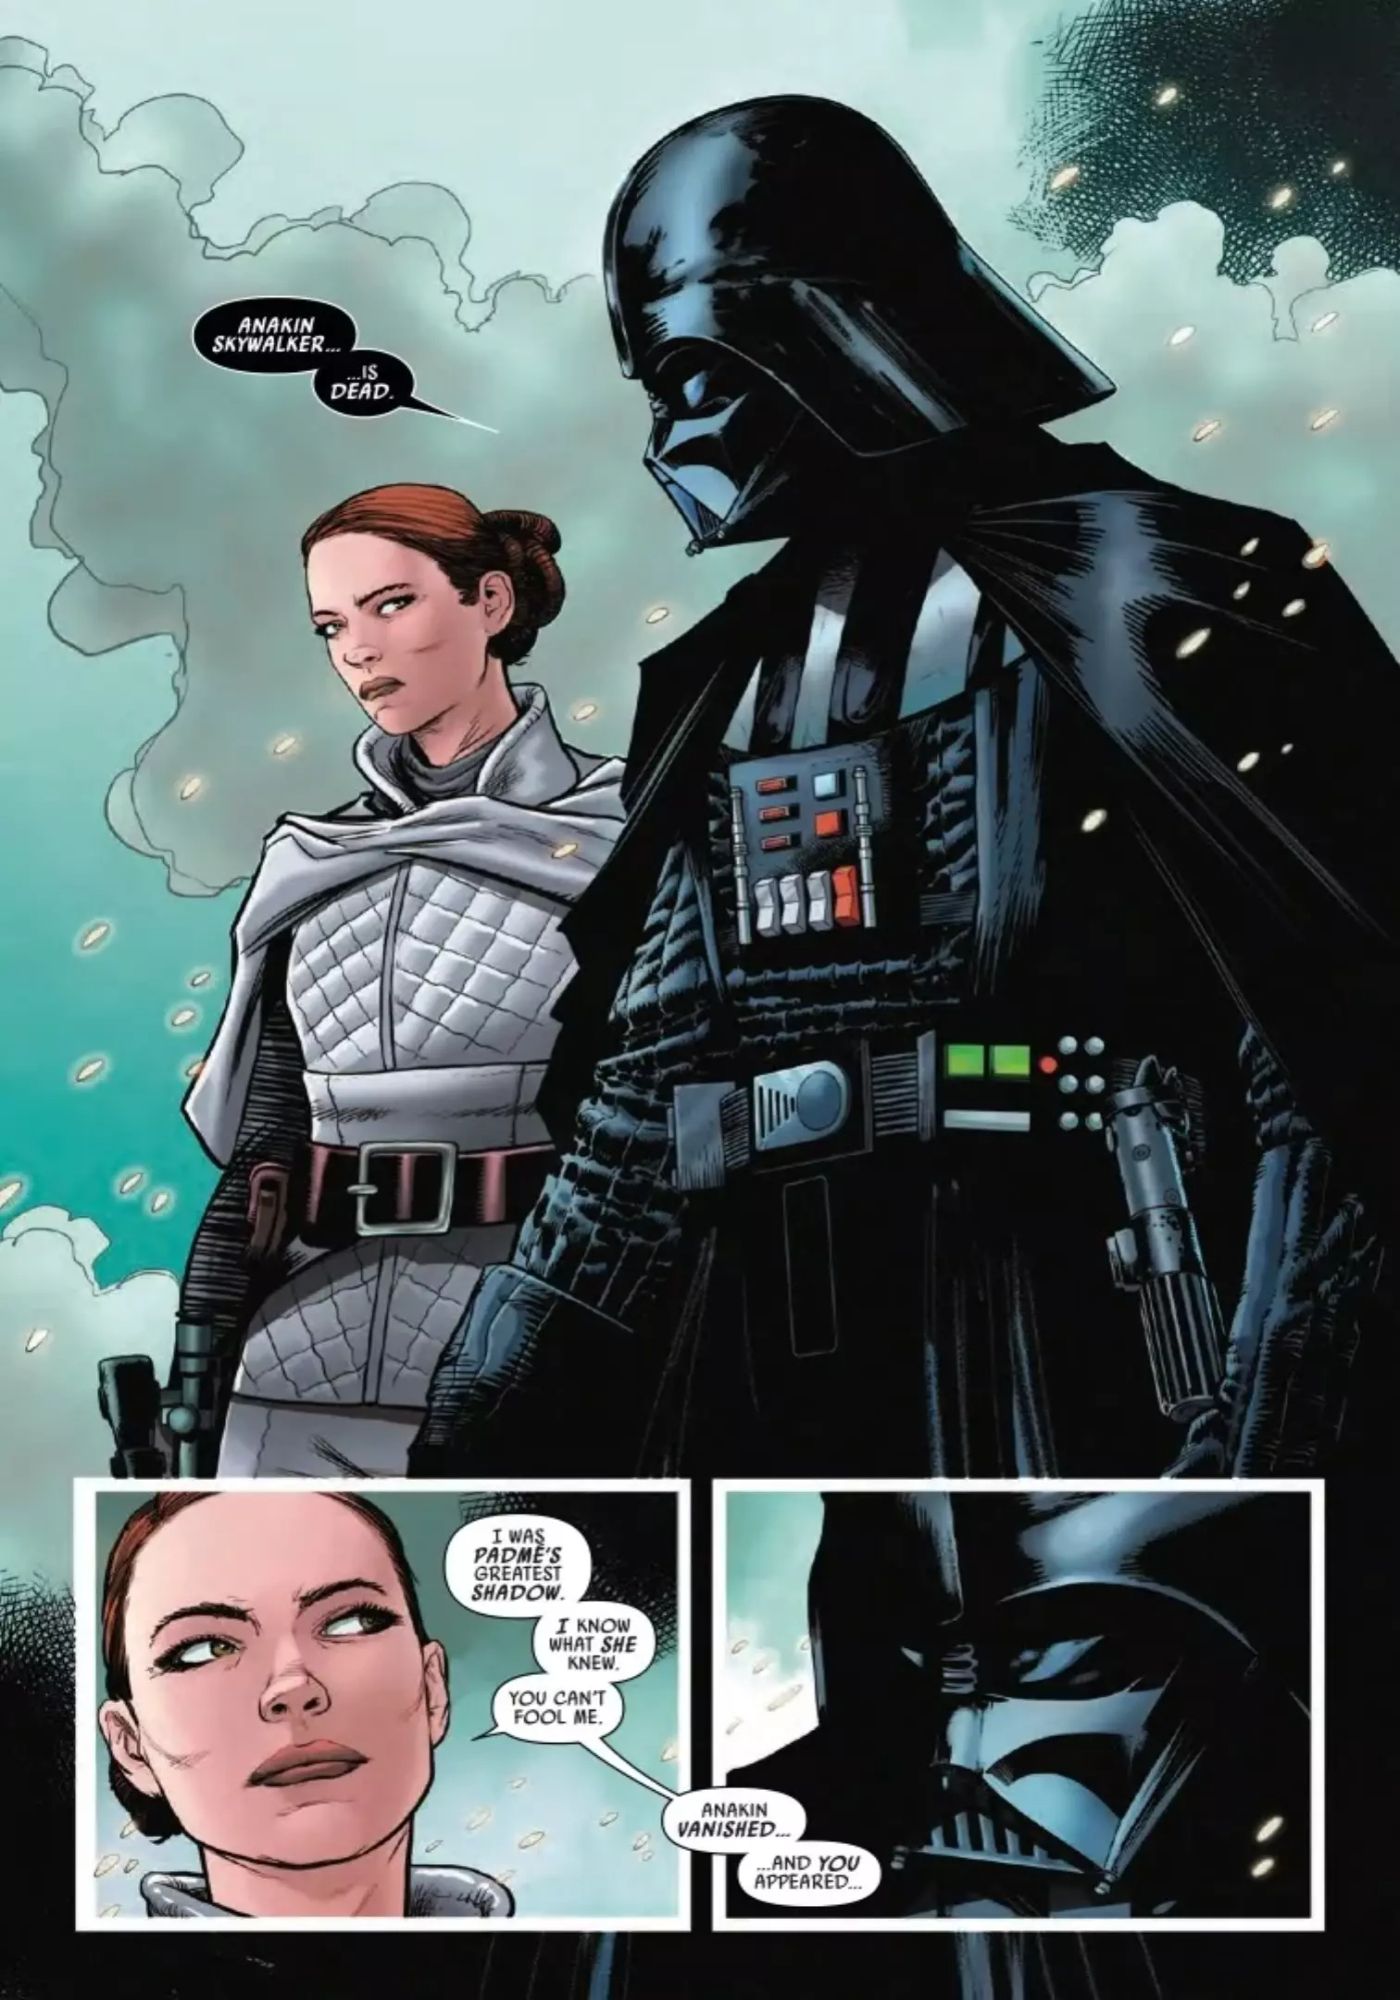 Star Wars Vader